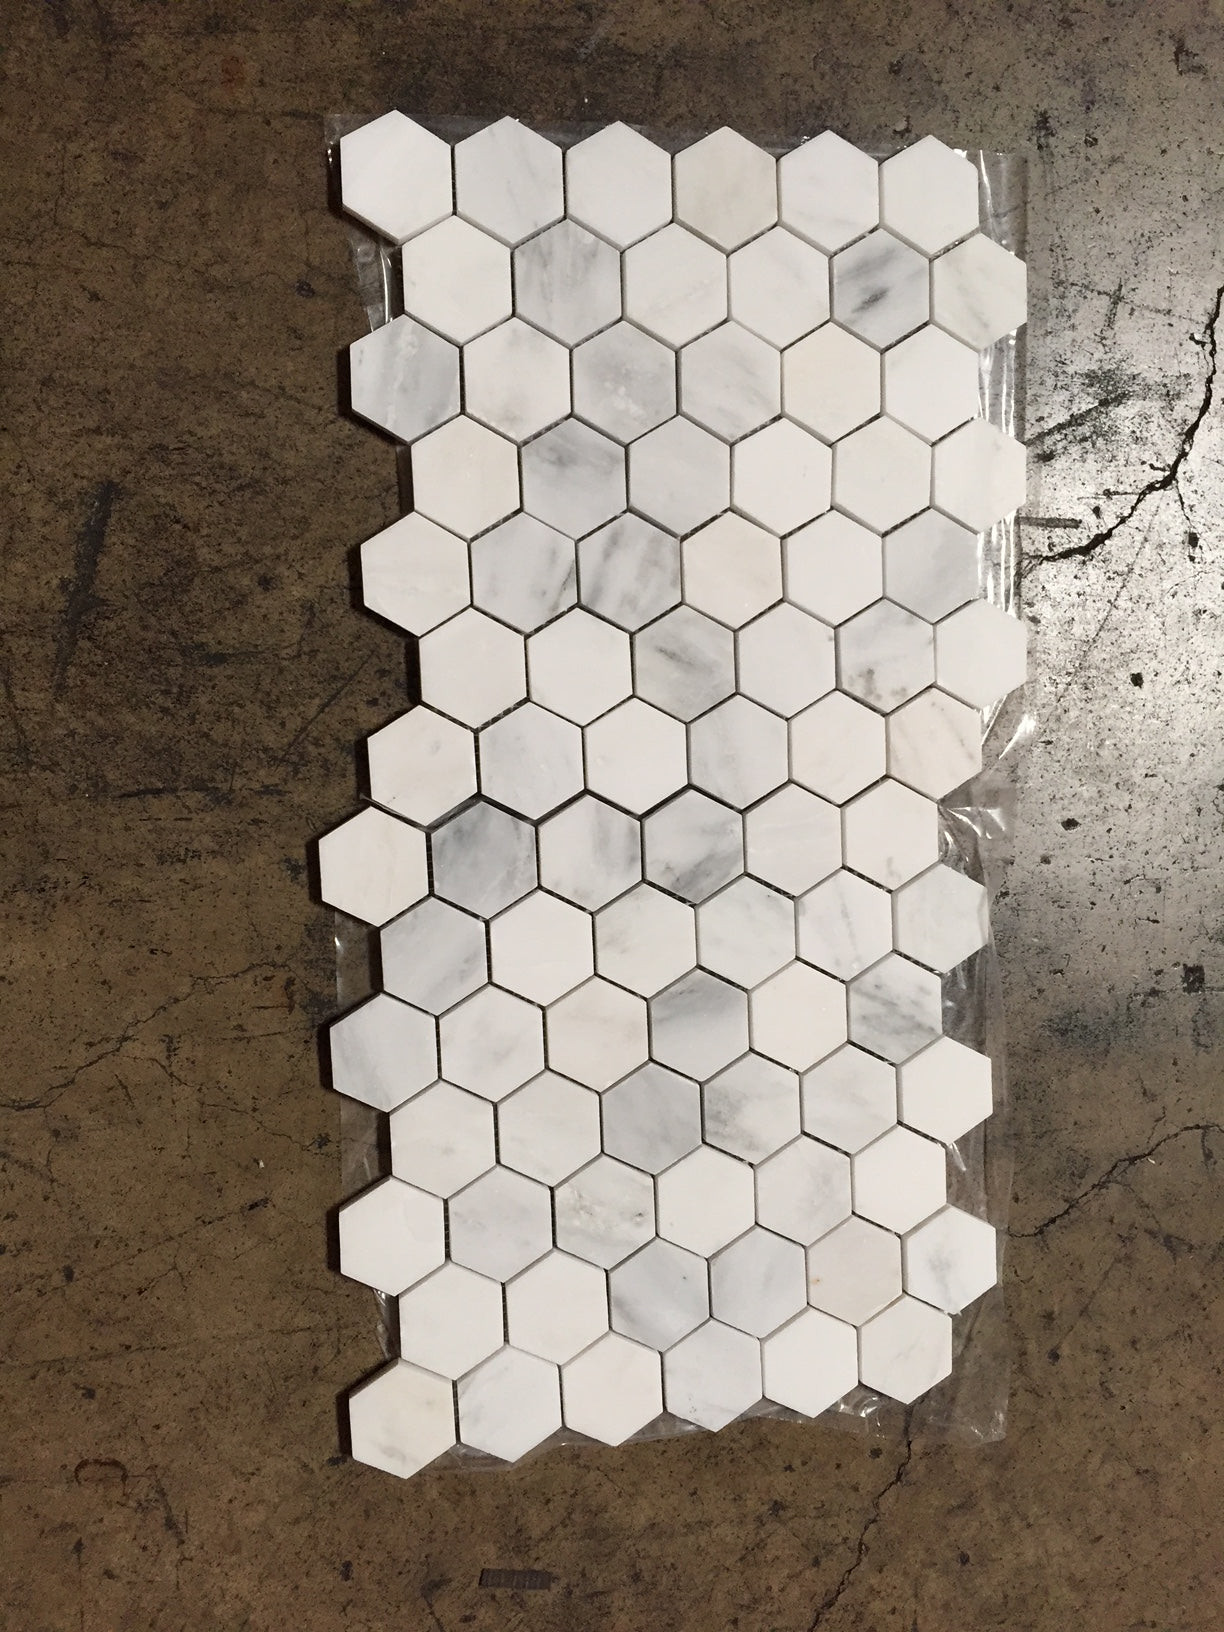 Oriental White Hexagon Mosaic Tile 2x2"